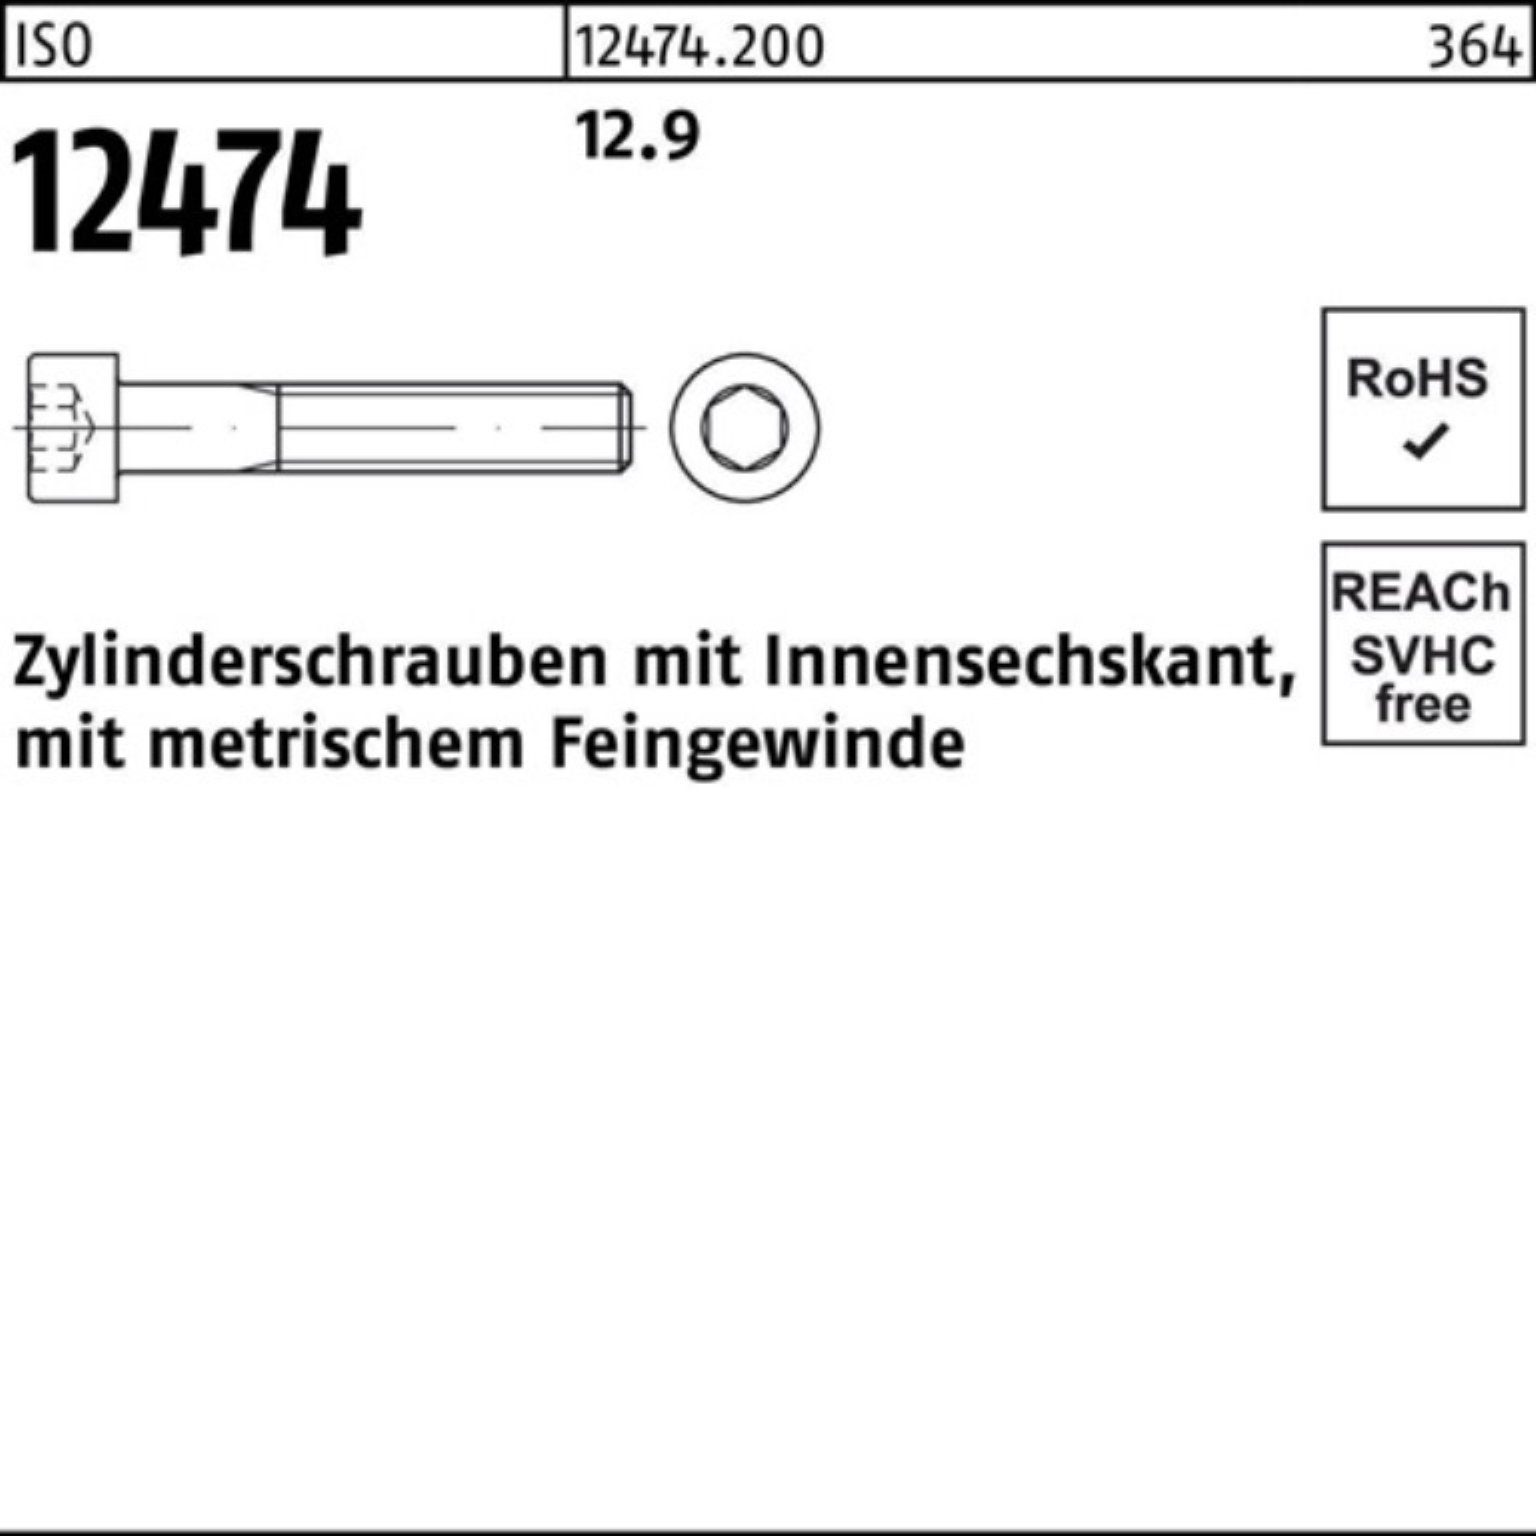 1x Innen-6kt 35 Zylinderschraube Reyher Pack St 12.9 12474 100er Zylinderschraube ISO M10x 100